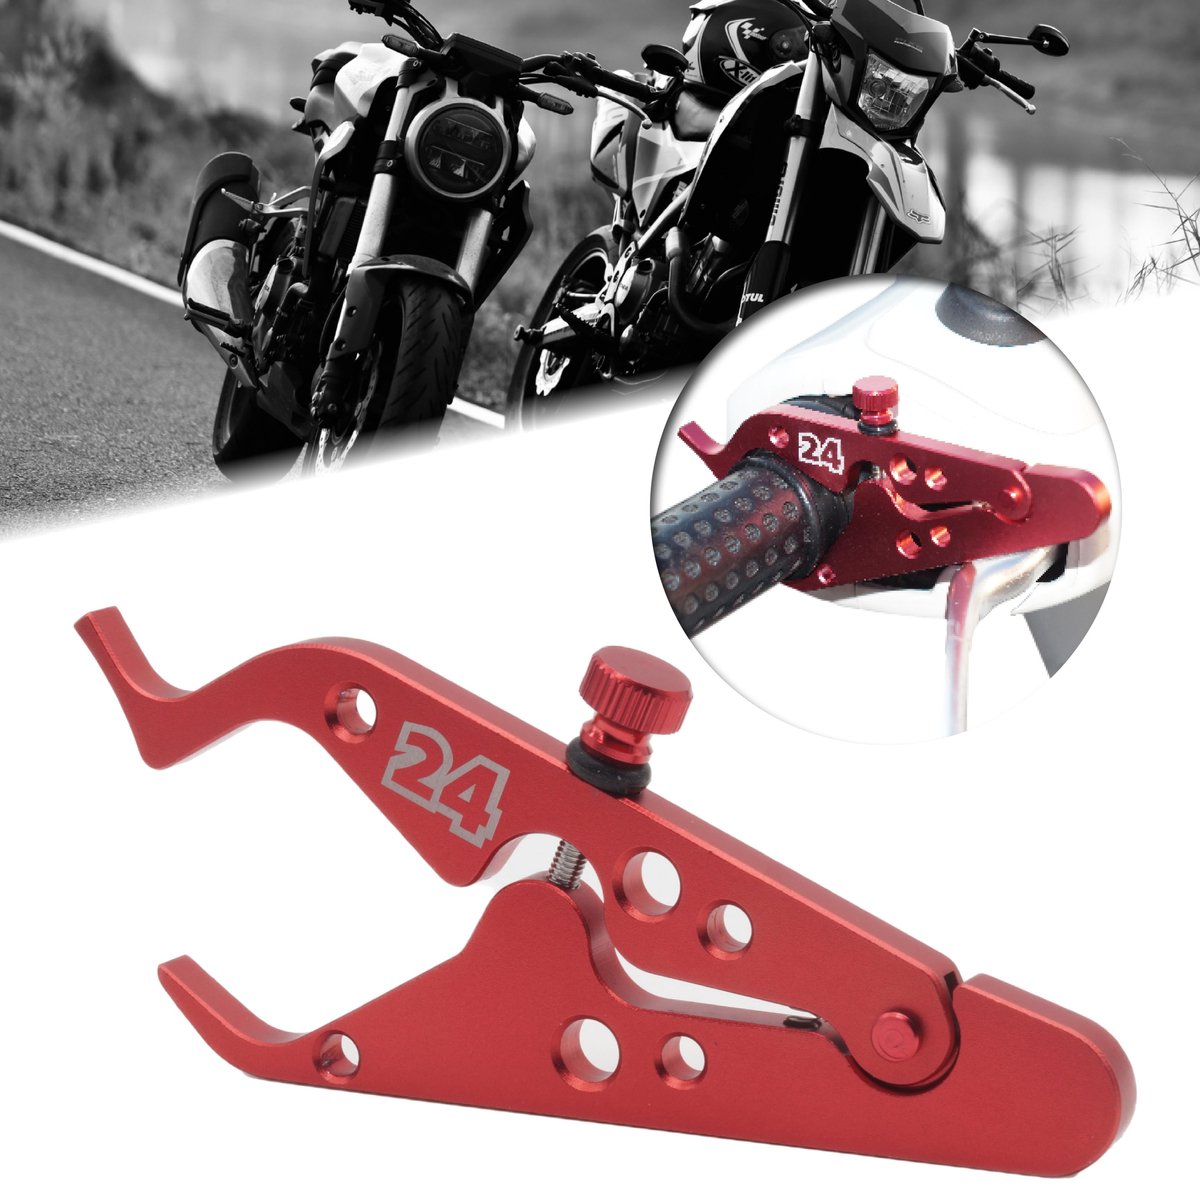 Motor24™ - Motorfiets cruisecontrol rood - motor brommer scooter cruise control - sterk aluminium - Geen verzendkosten